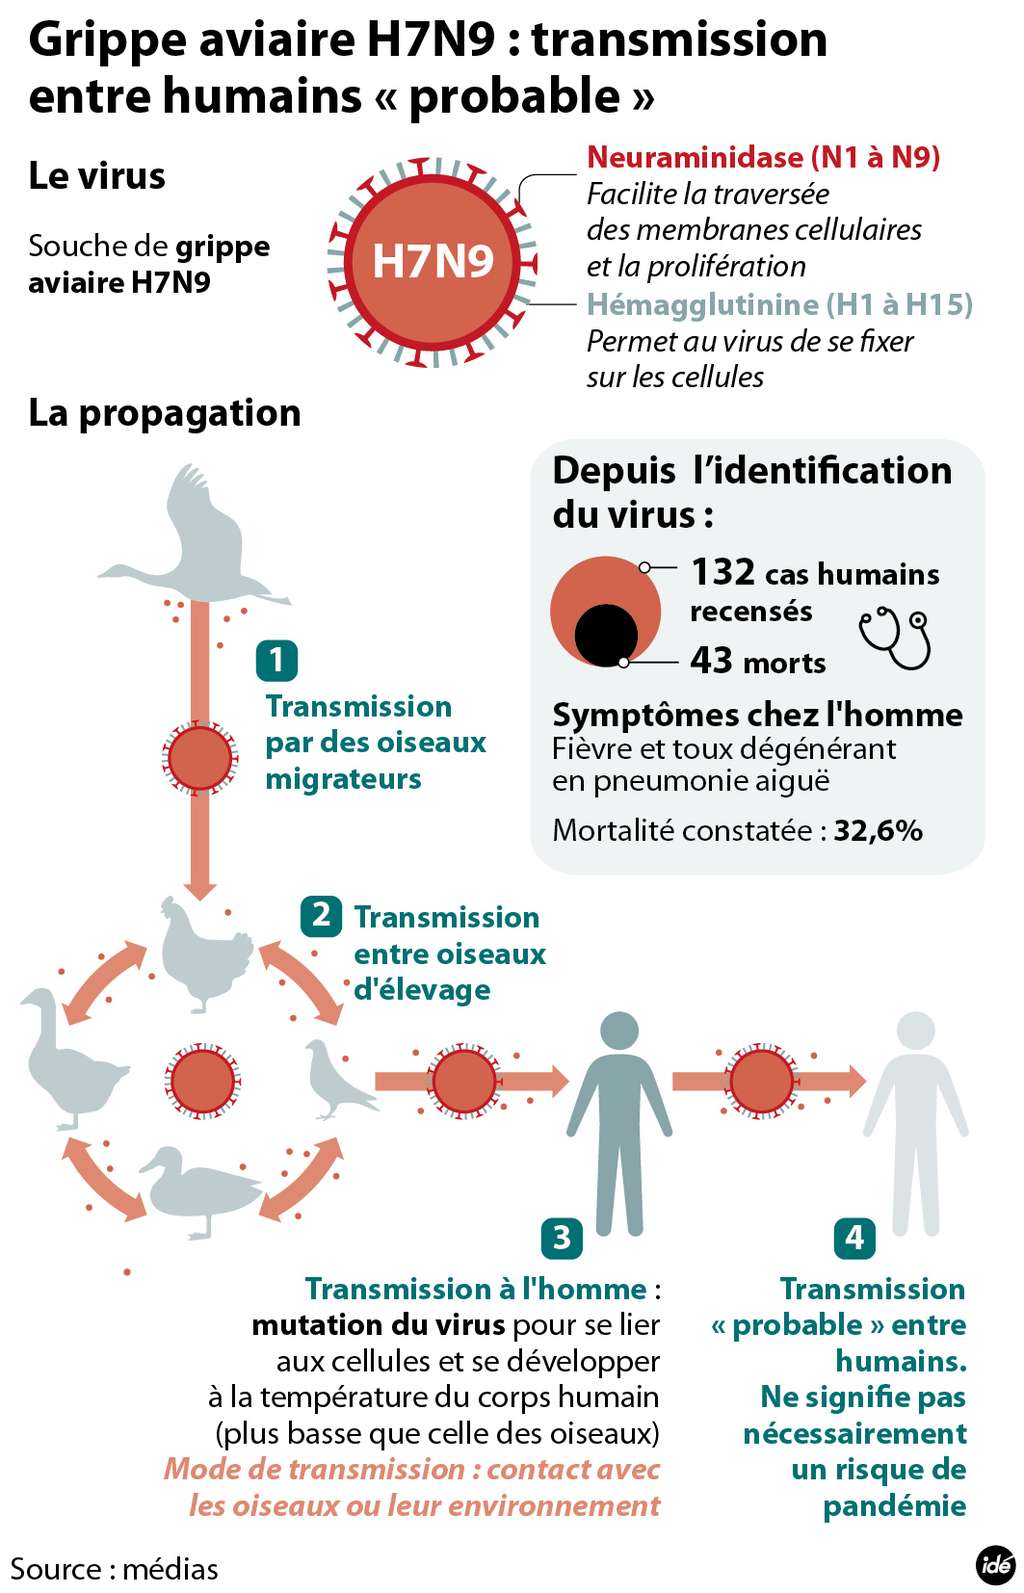 Une nouvelle étude rend compte d'une transmission probable du virus H7N9 entre deux humains. Le virus serait tout d'abord transmis par des volailles d'élevage à l'Homme, puis pourrait contaminer directement d'autres personnes. Cependant, ce mode d’infection ne semble pas fréquent, puisqu'un seul cas a été mis en évidence jusqu'ici. © Idé